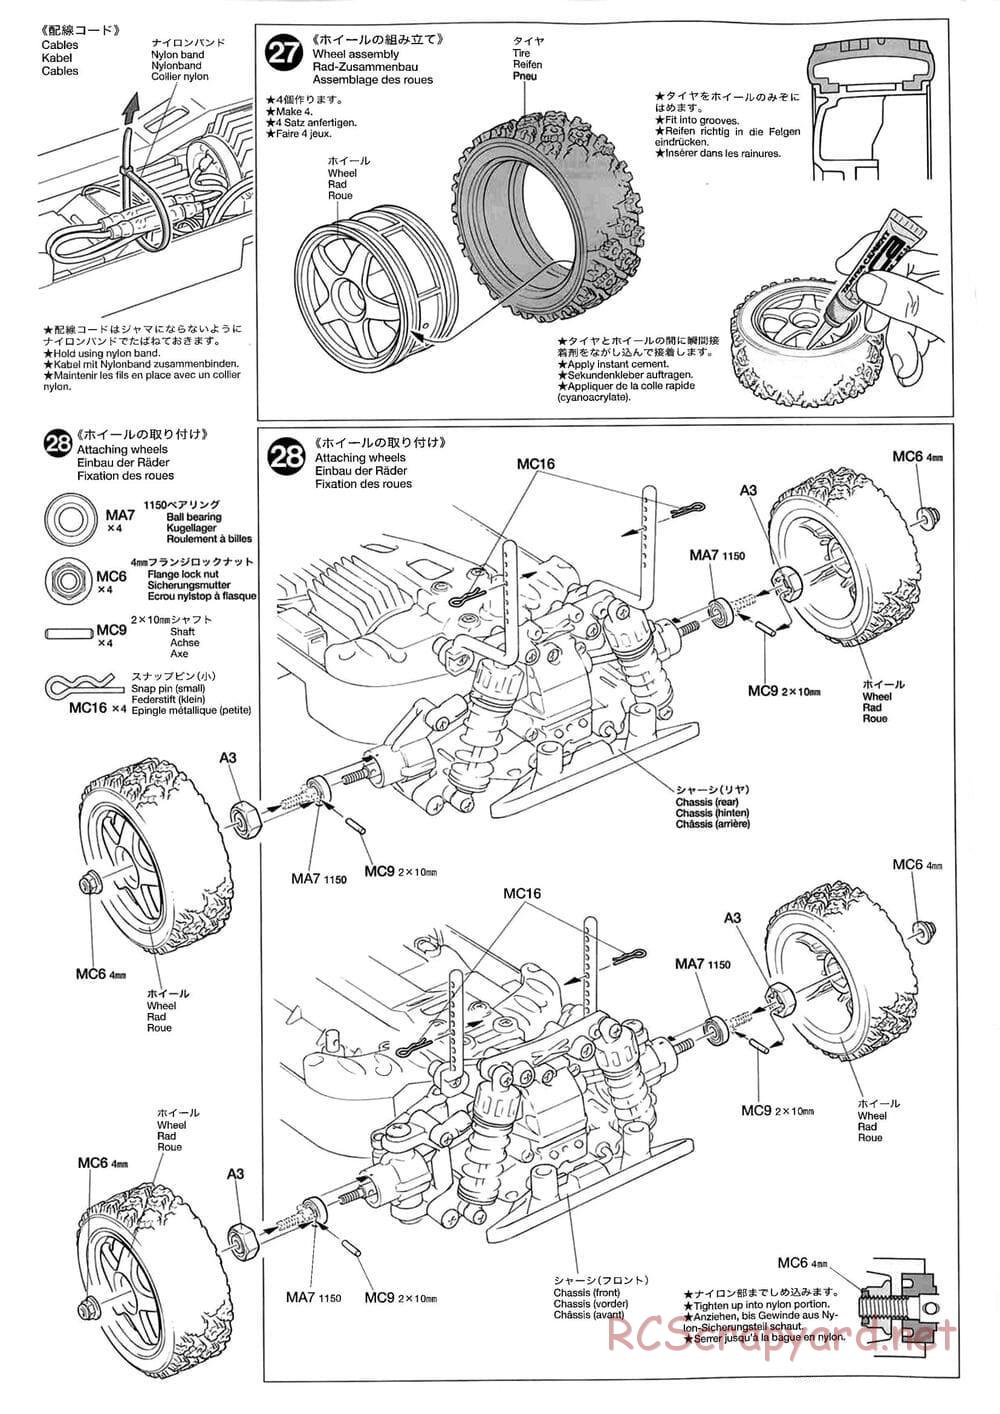 Tamiya - TB-01 Chassis - Manual - Page 14